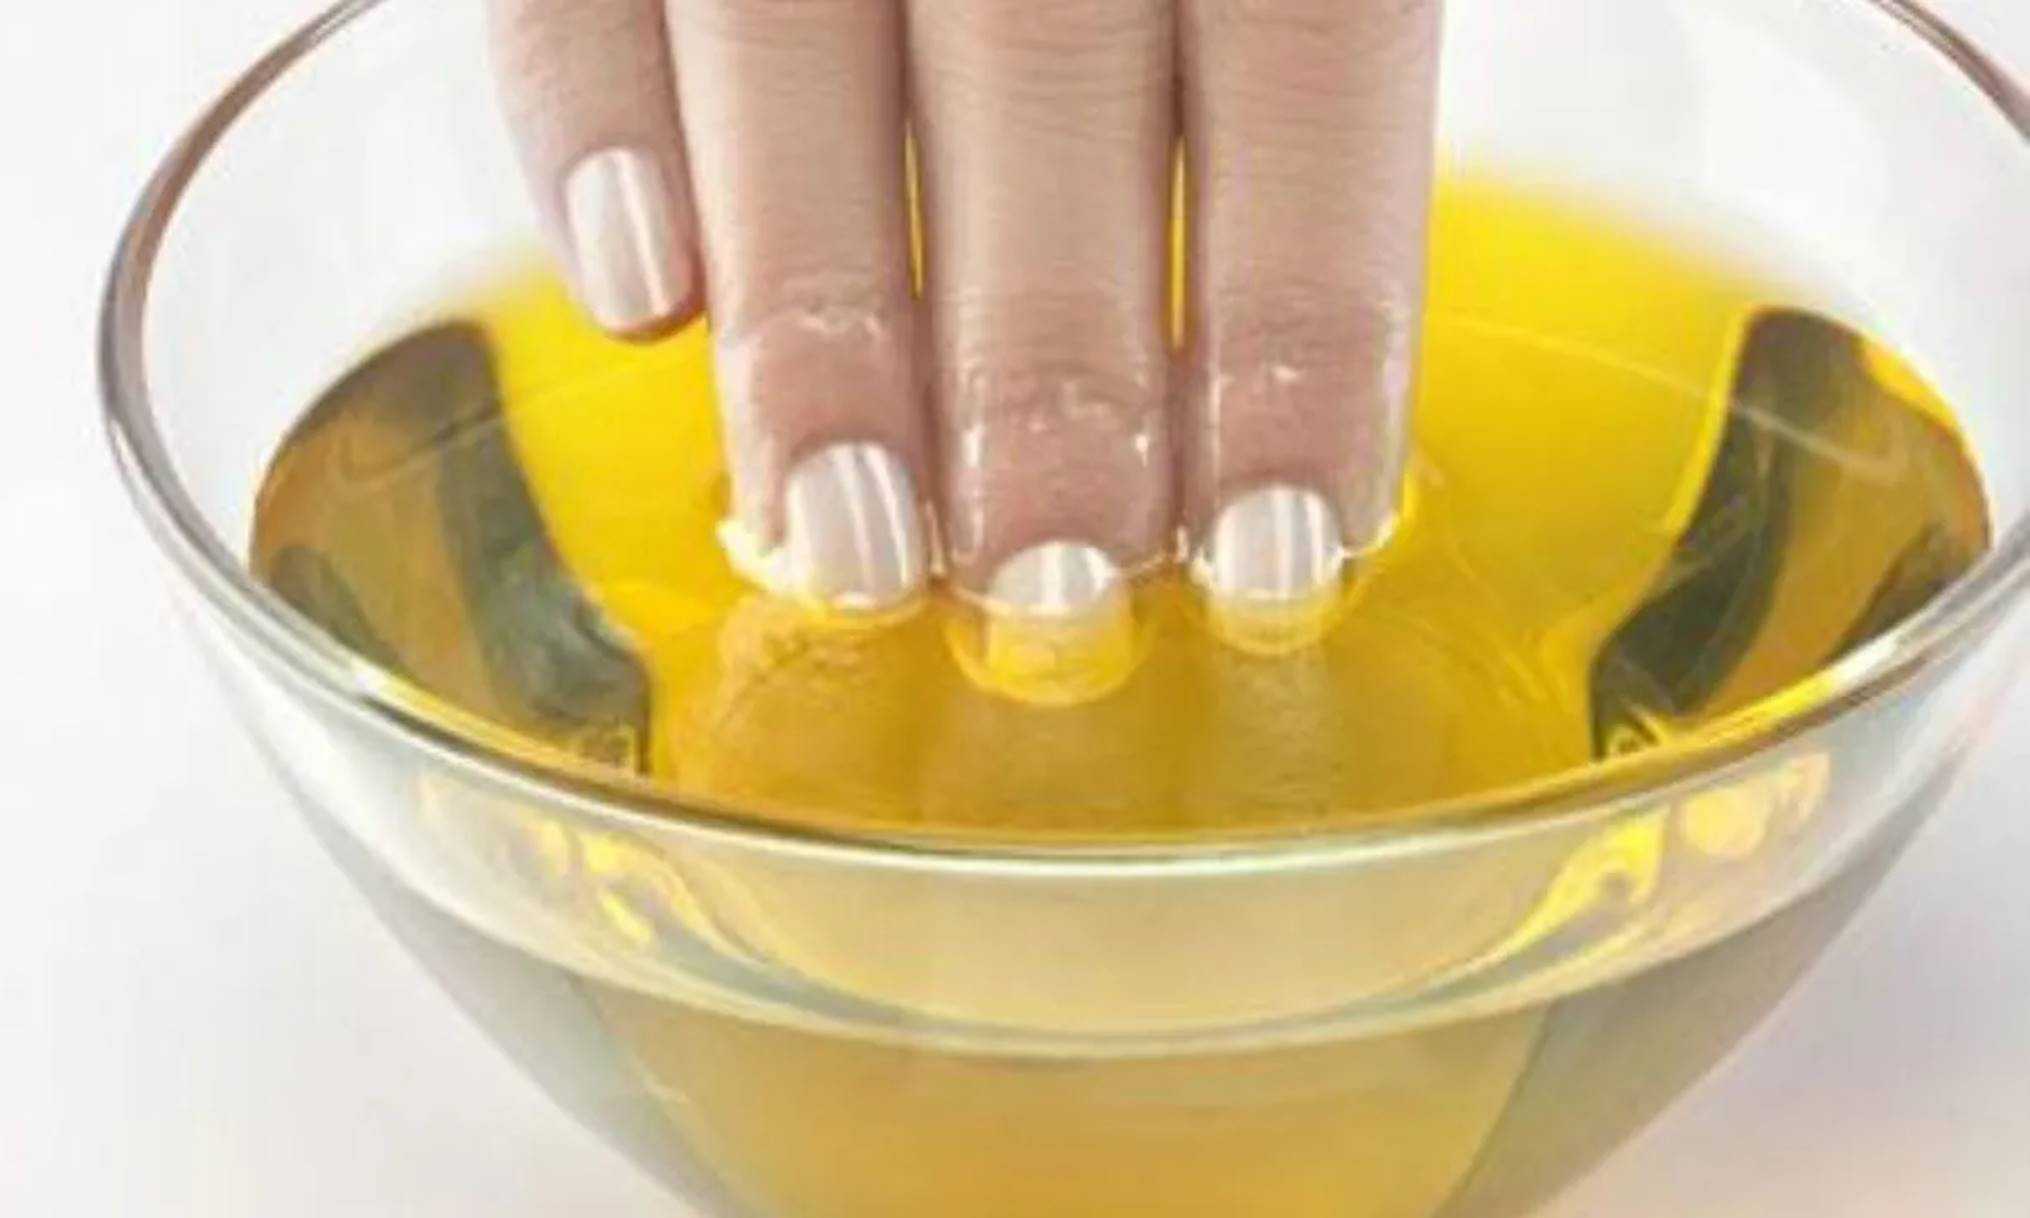 Descubra como remover gel das unhas em casa sem prejudicá-las